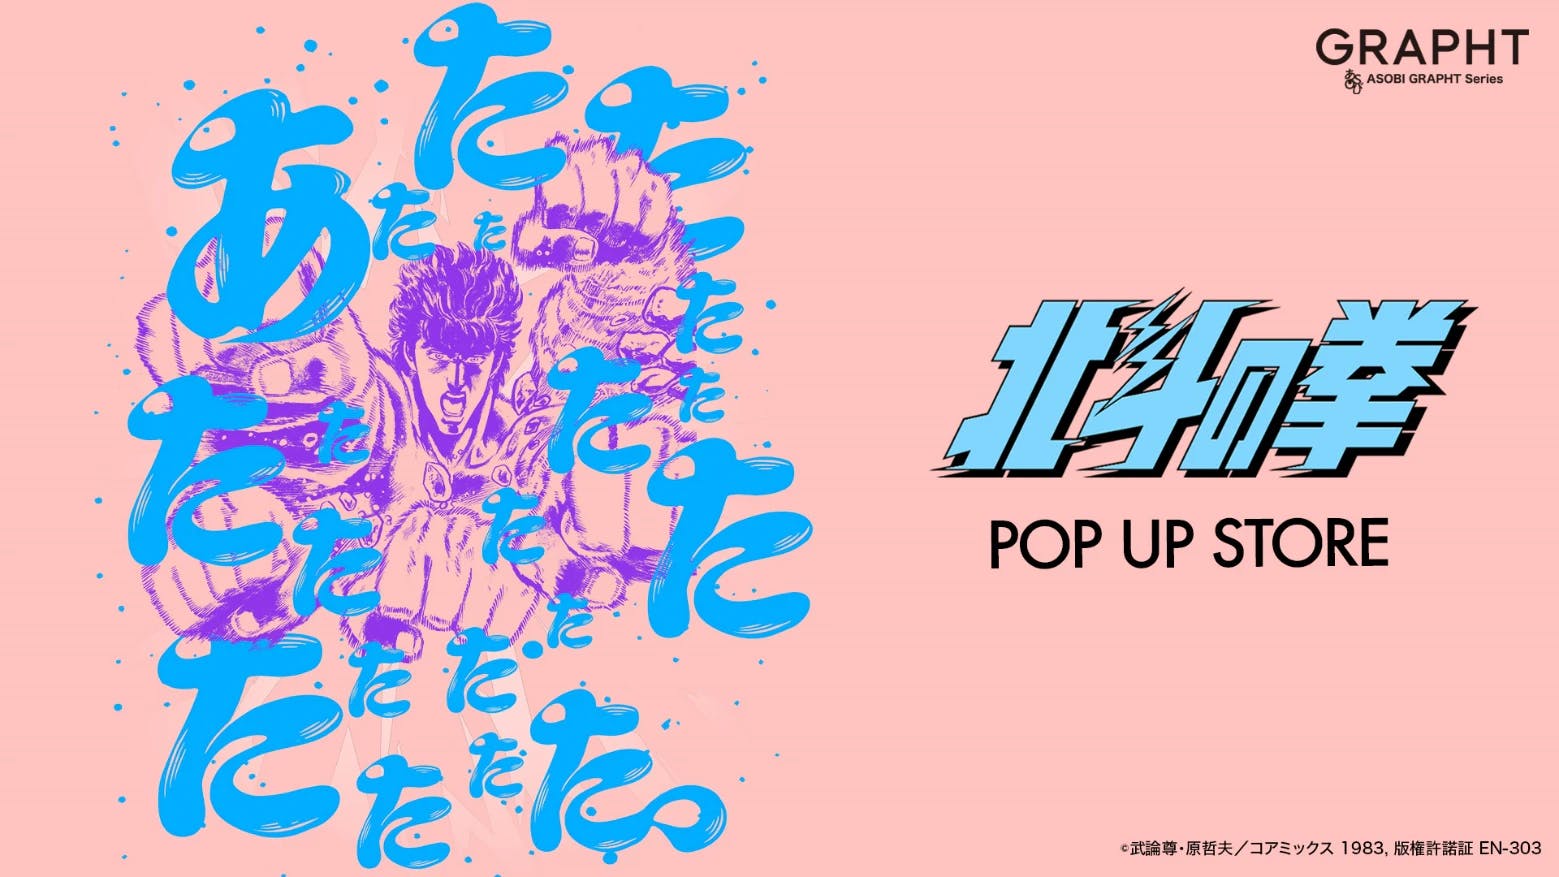 14/05 (mardi) ~ [Fist of the North Star POP UP STORE] Organisé dans l'espace événementiel à l'extérieur de la porte sud de la gare JR d'Ikebukuro ! Des visites auront lieu à Saitama, Chiba et Kanagawa !!